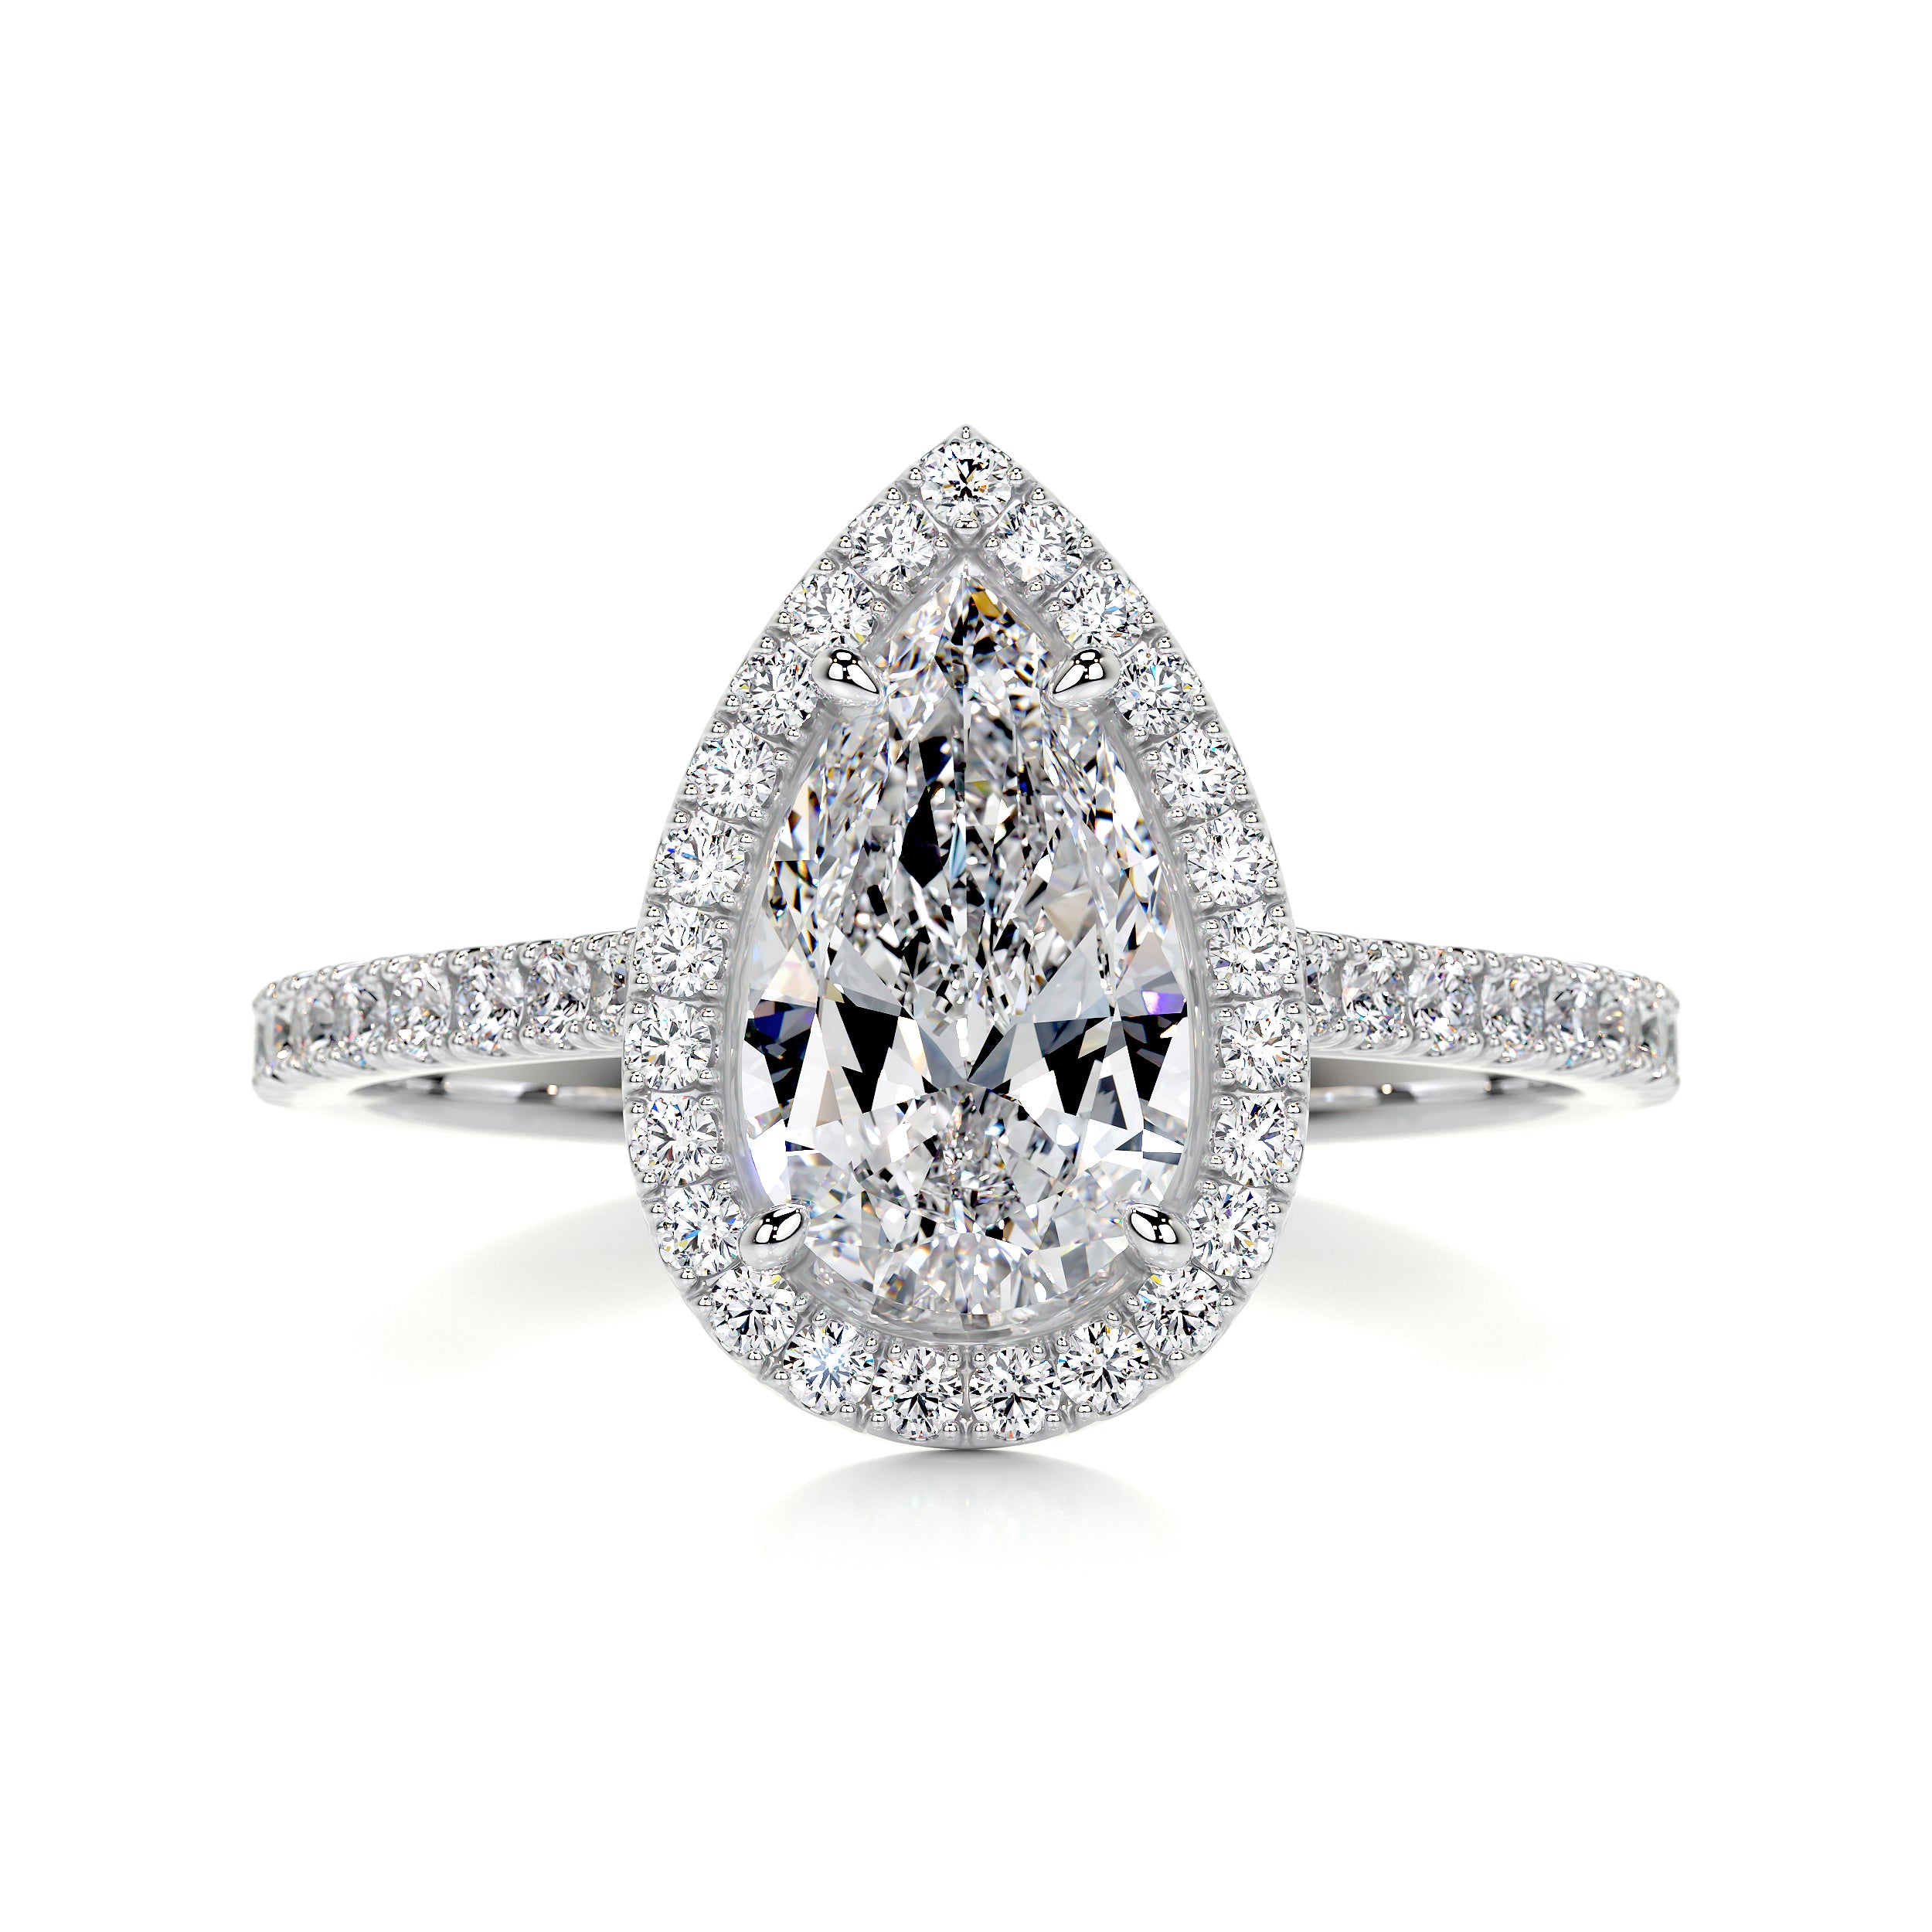 Sophia Diamond Engagement Ring -18K White Gold